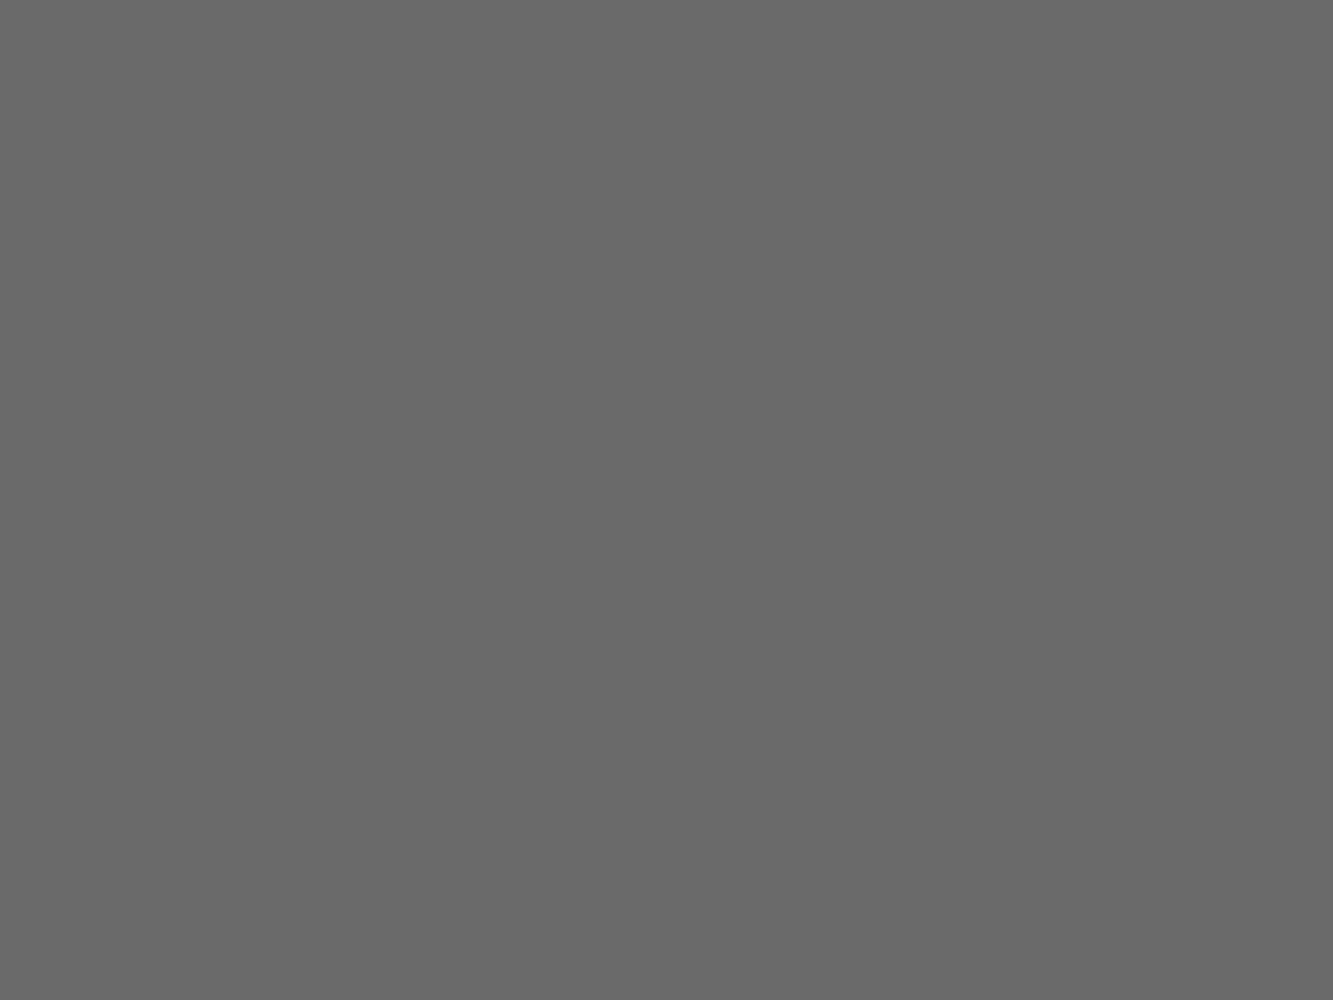 Первый заместитель Председателя Совета Министров СССР Дмитрий Полянский (справа) в разделе изобразительного искусства павильона СССР на всемирной выставке «Экспо-67» в Монреале, Канада. 1967. Фотография: Александр Батанов / ТАСС